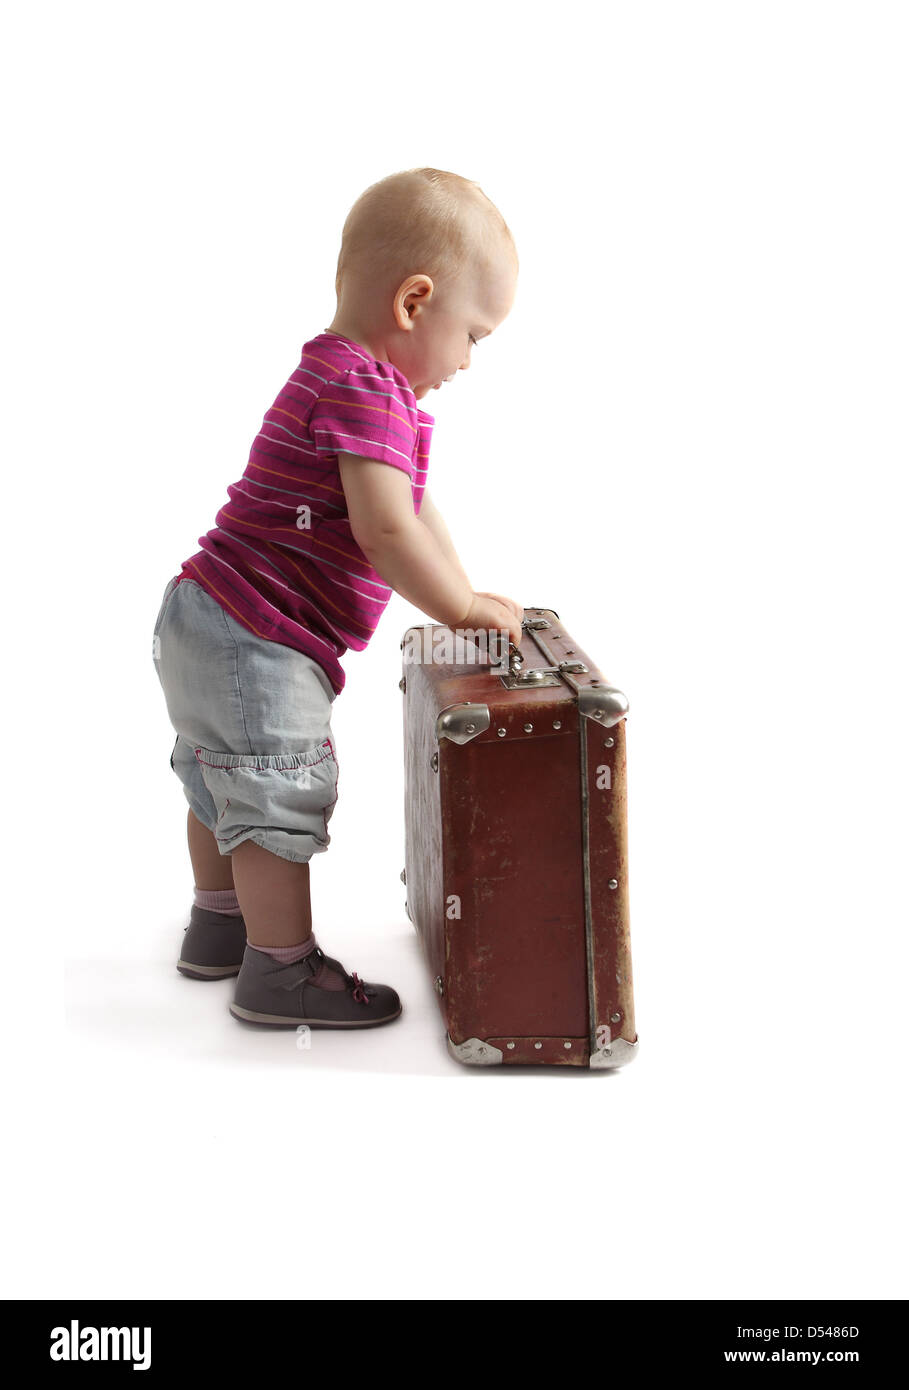 Petit enfant debout à côté d'une valise, fond blanc, isolé Banque D'Images